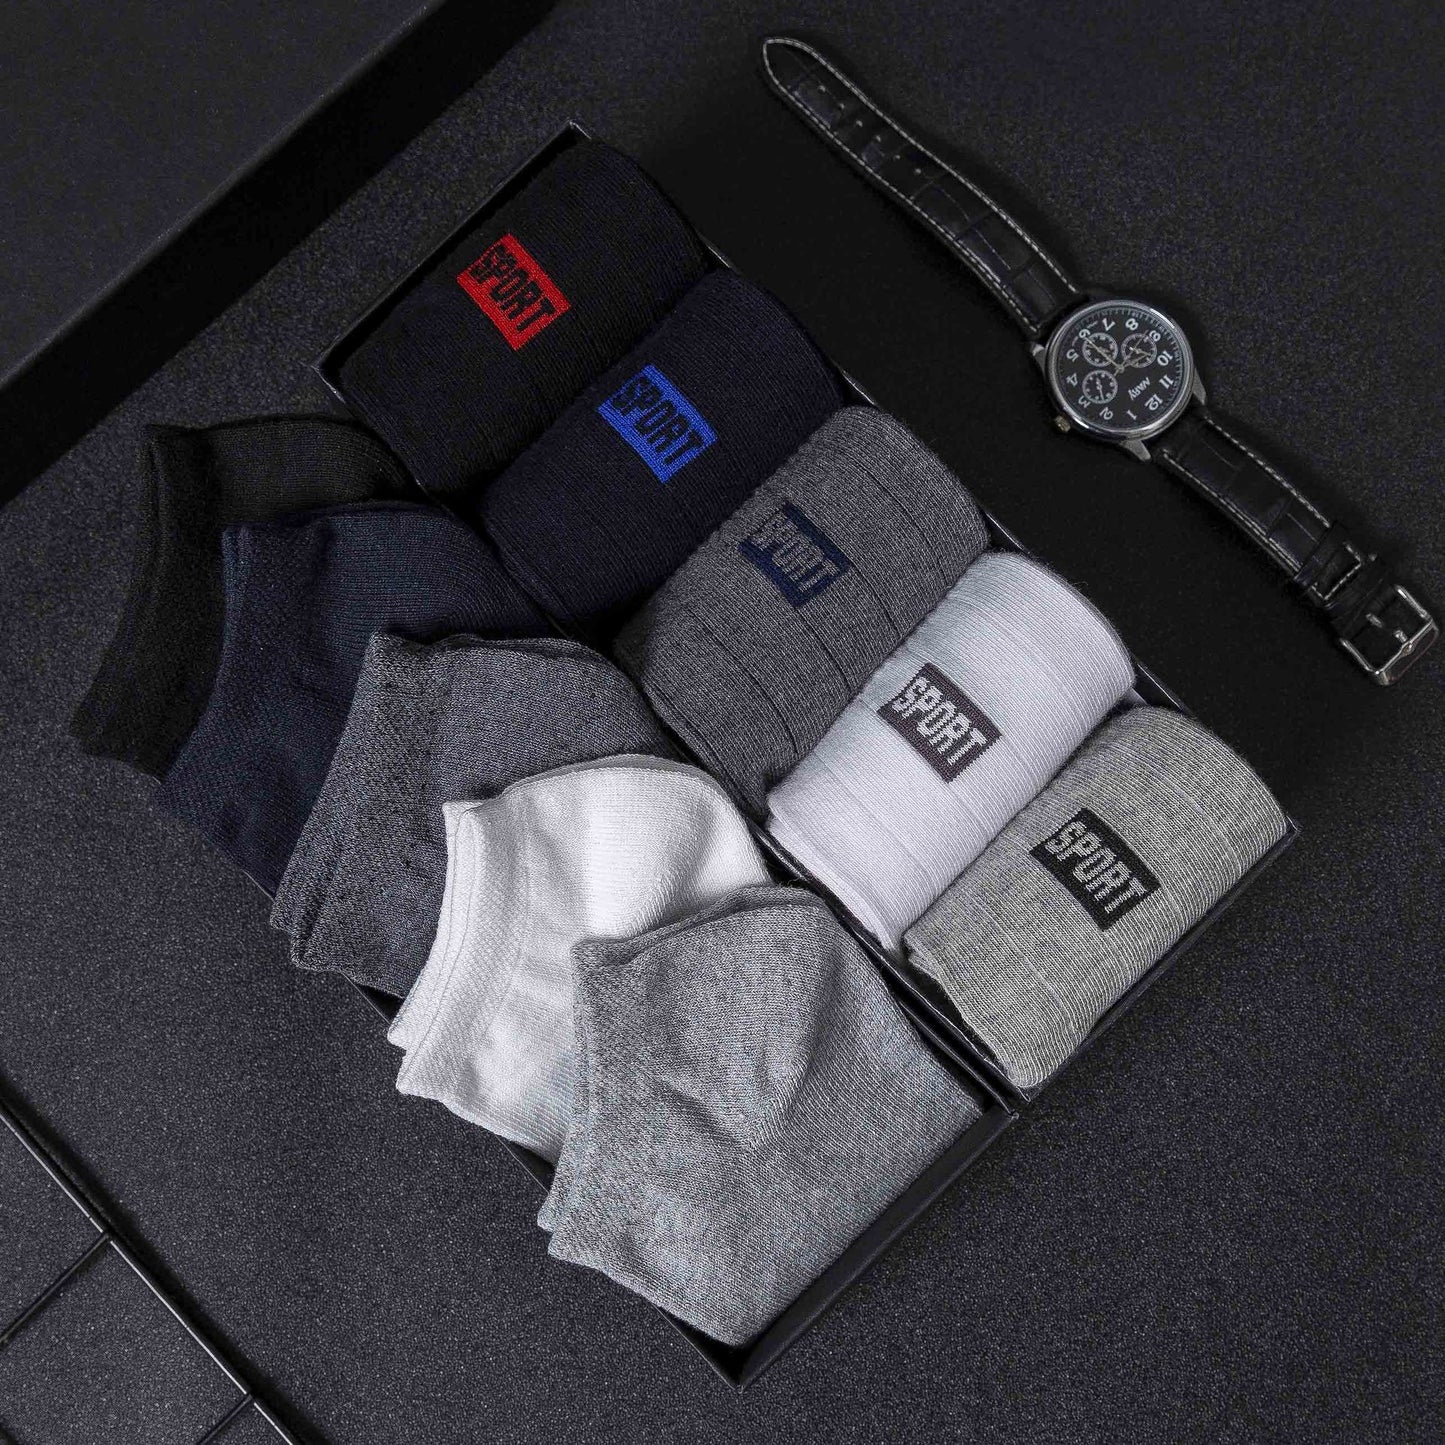 Breathable Men's Socks Set-Casual Trendy Socks for Everyday Comfort